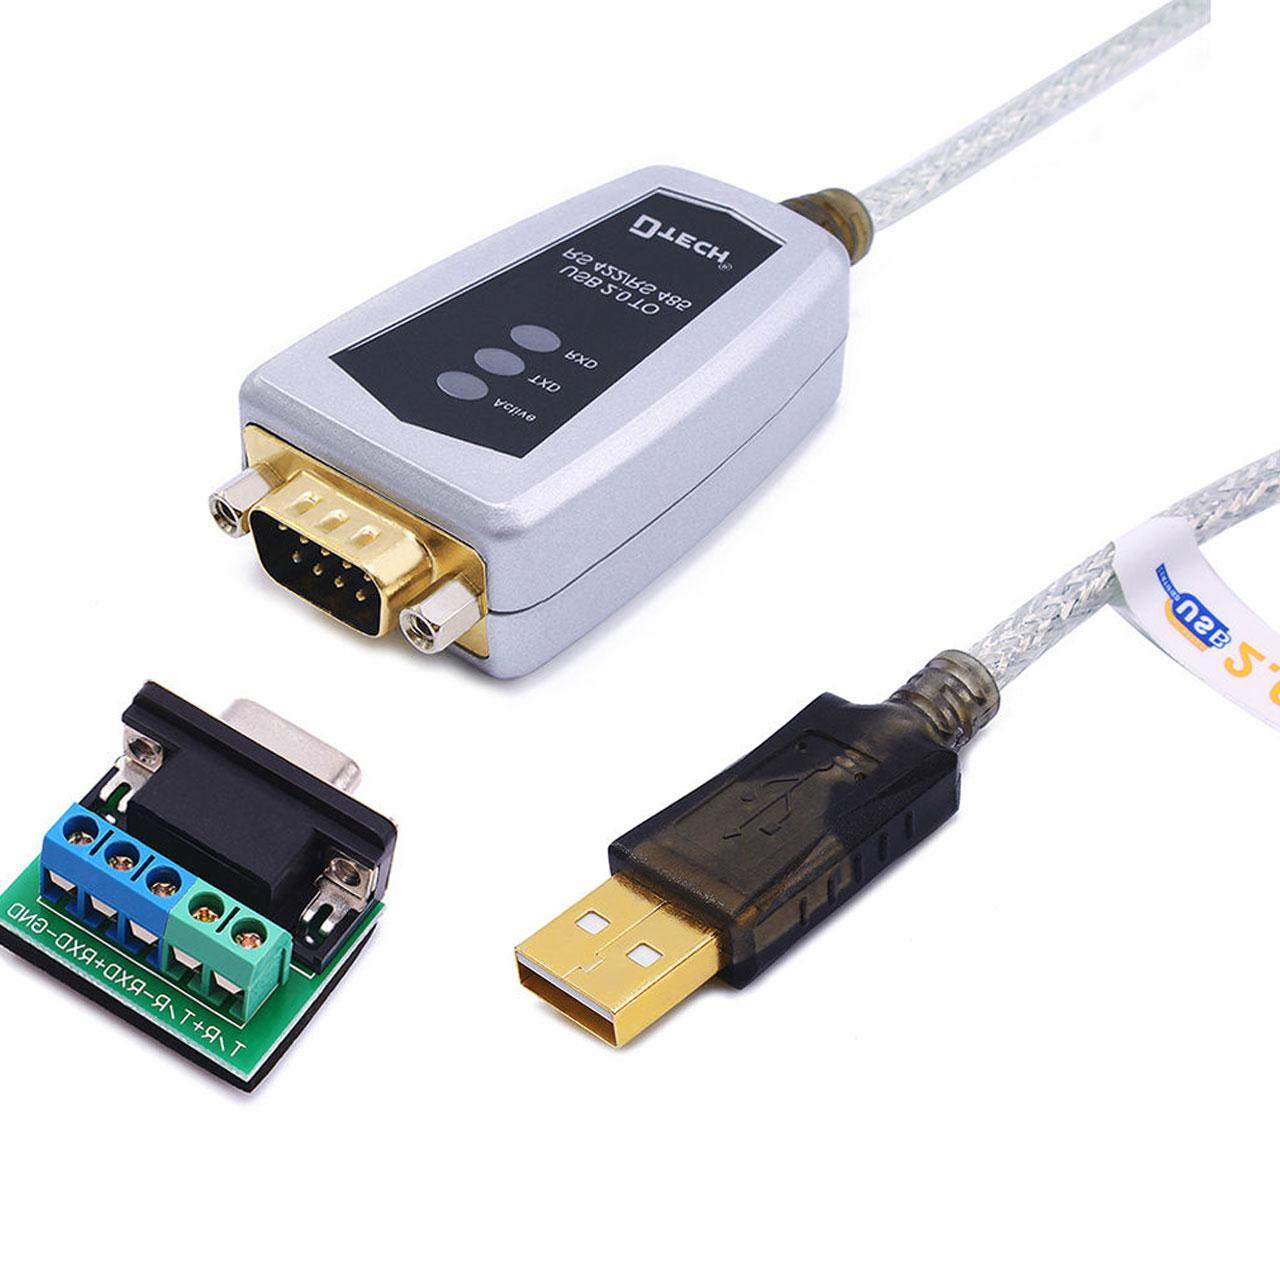 تبدیل USB به RS422 / RS485 برند DTECH 

DTECH USB to RS485 / RS422 Serial Converter Adapter Cable FTDI Chip